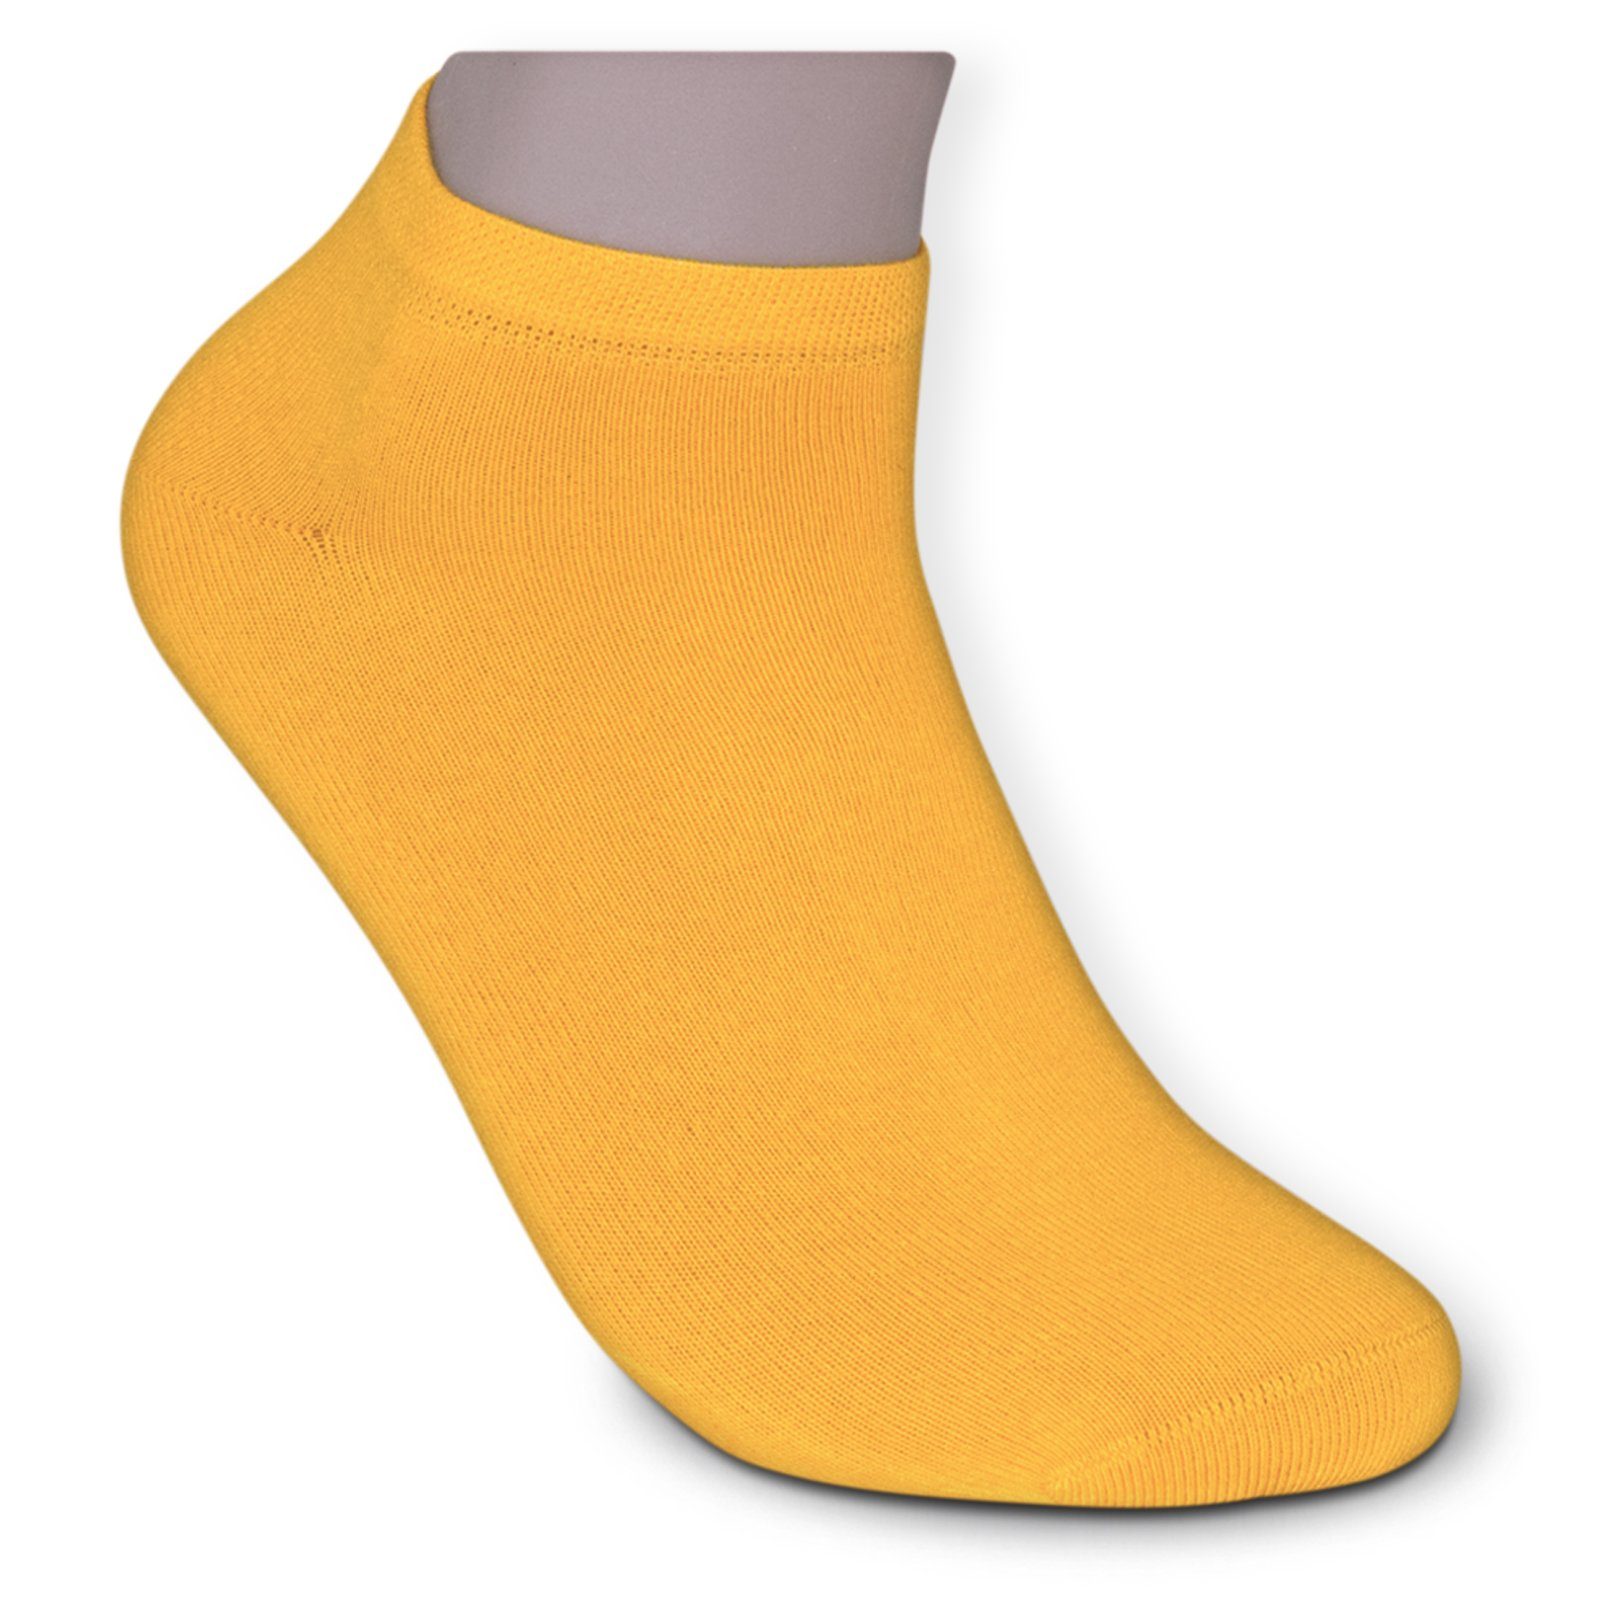 Die Sockenbude Sneakersocken gelb) Soft 4-Paar, Piqué-Bund (Bund, mit FLOWER weiß schwarz